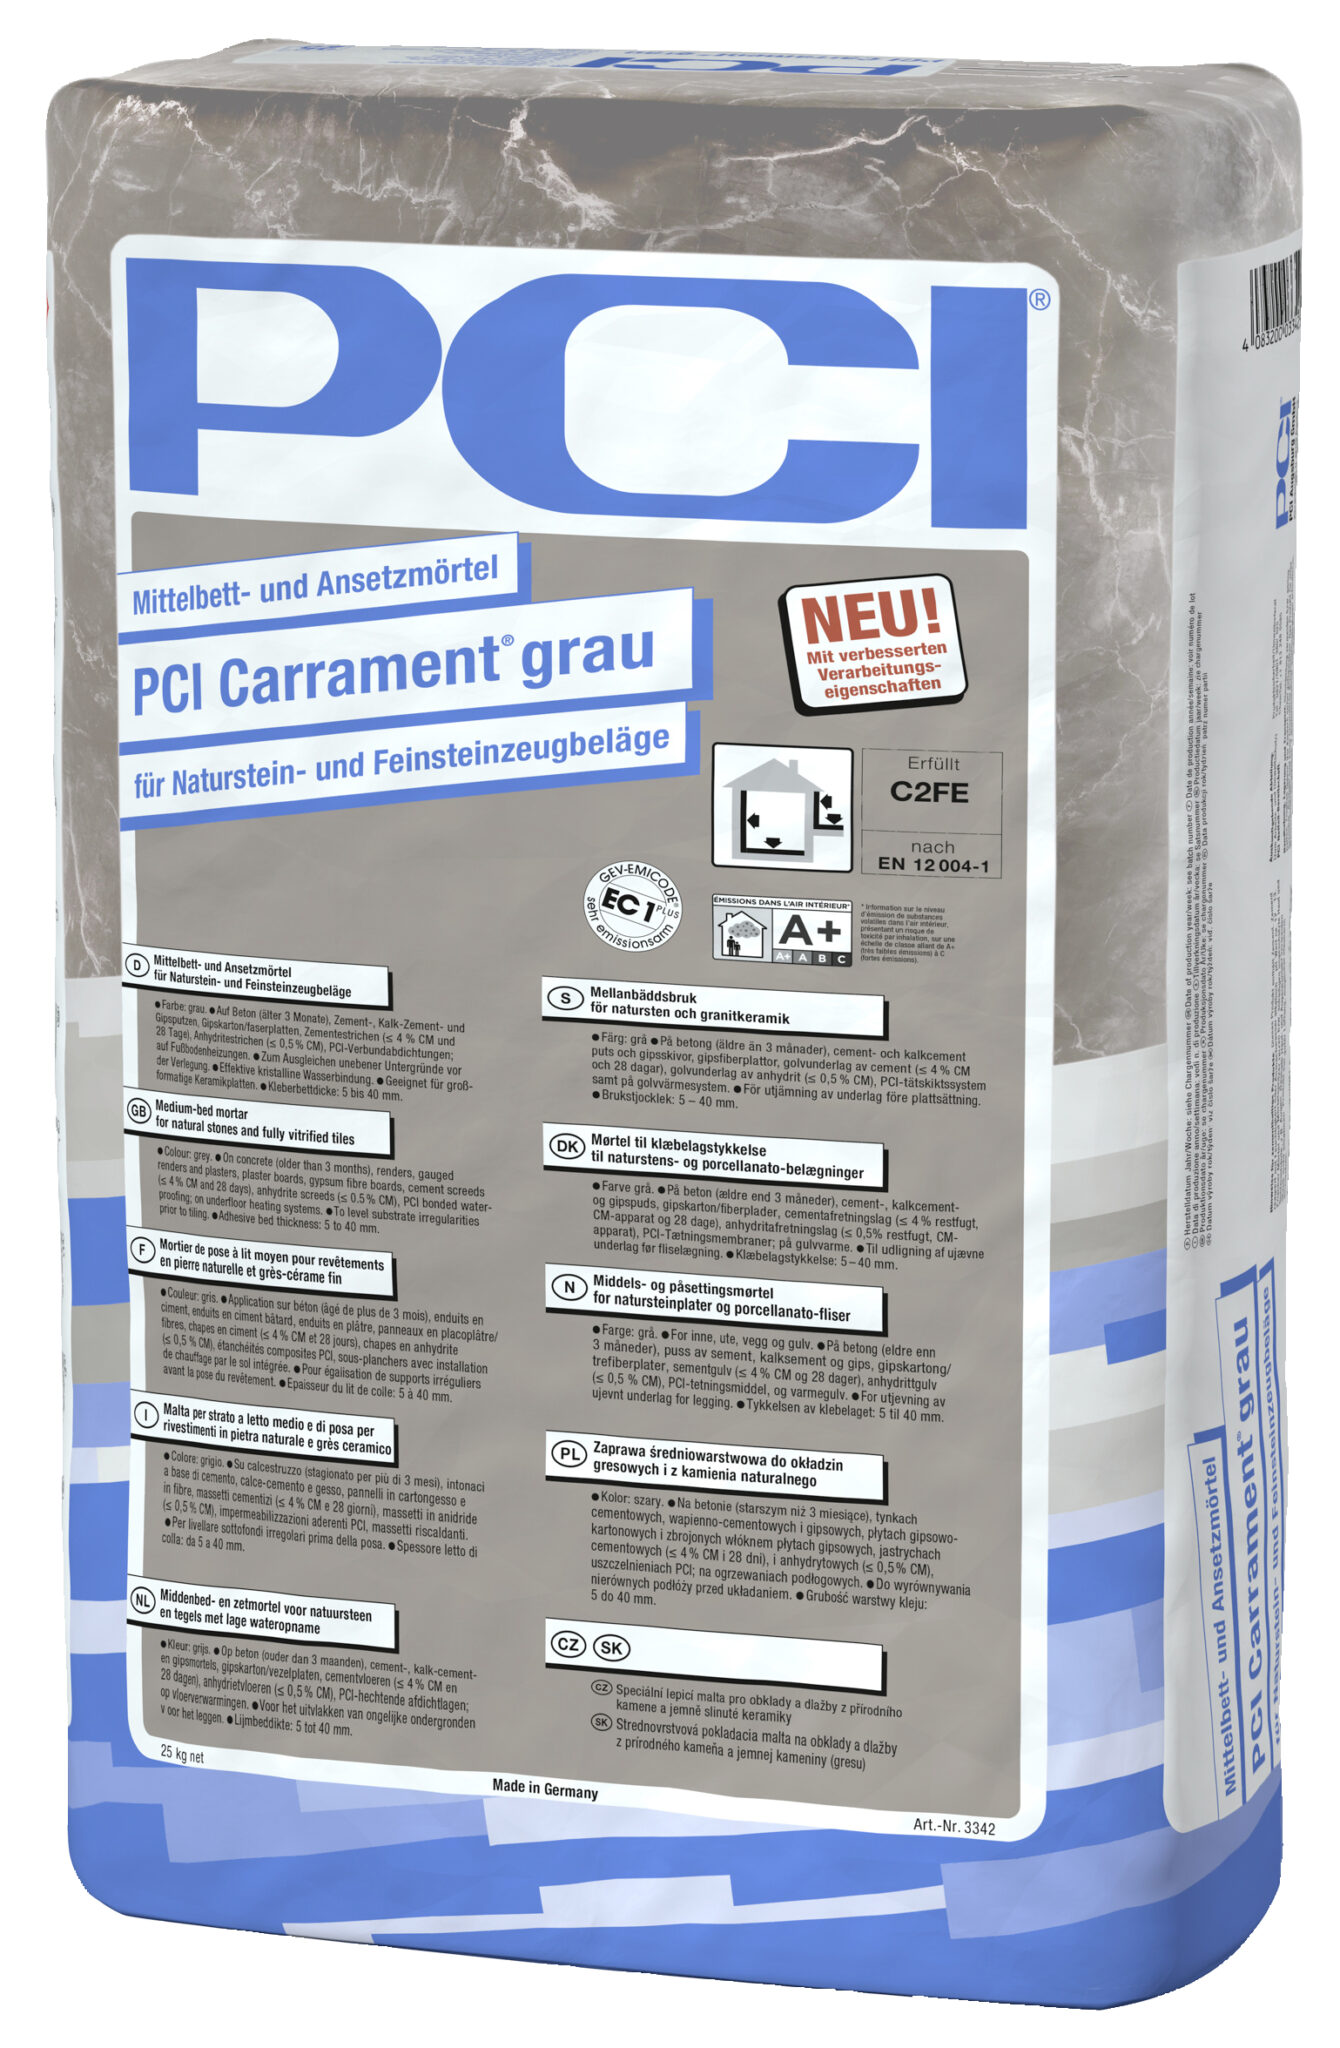 Nieuwe formule voor PCI Carrament